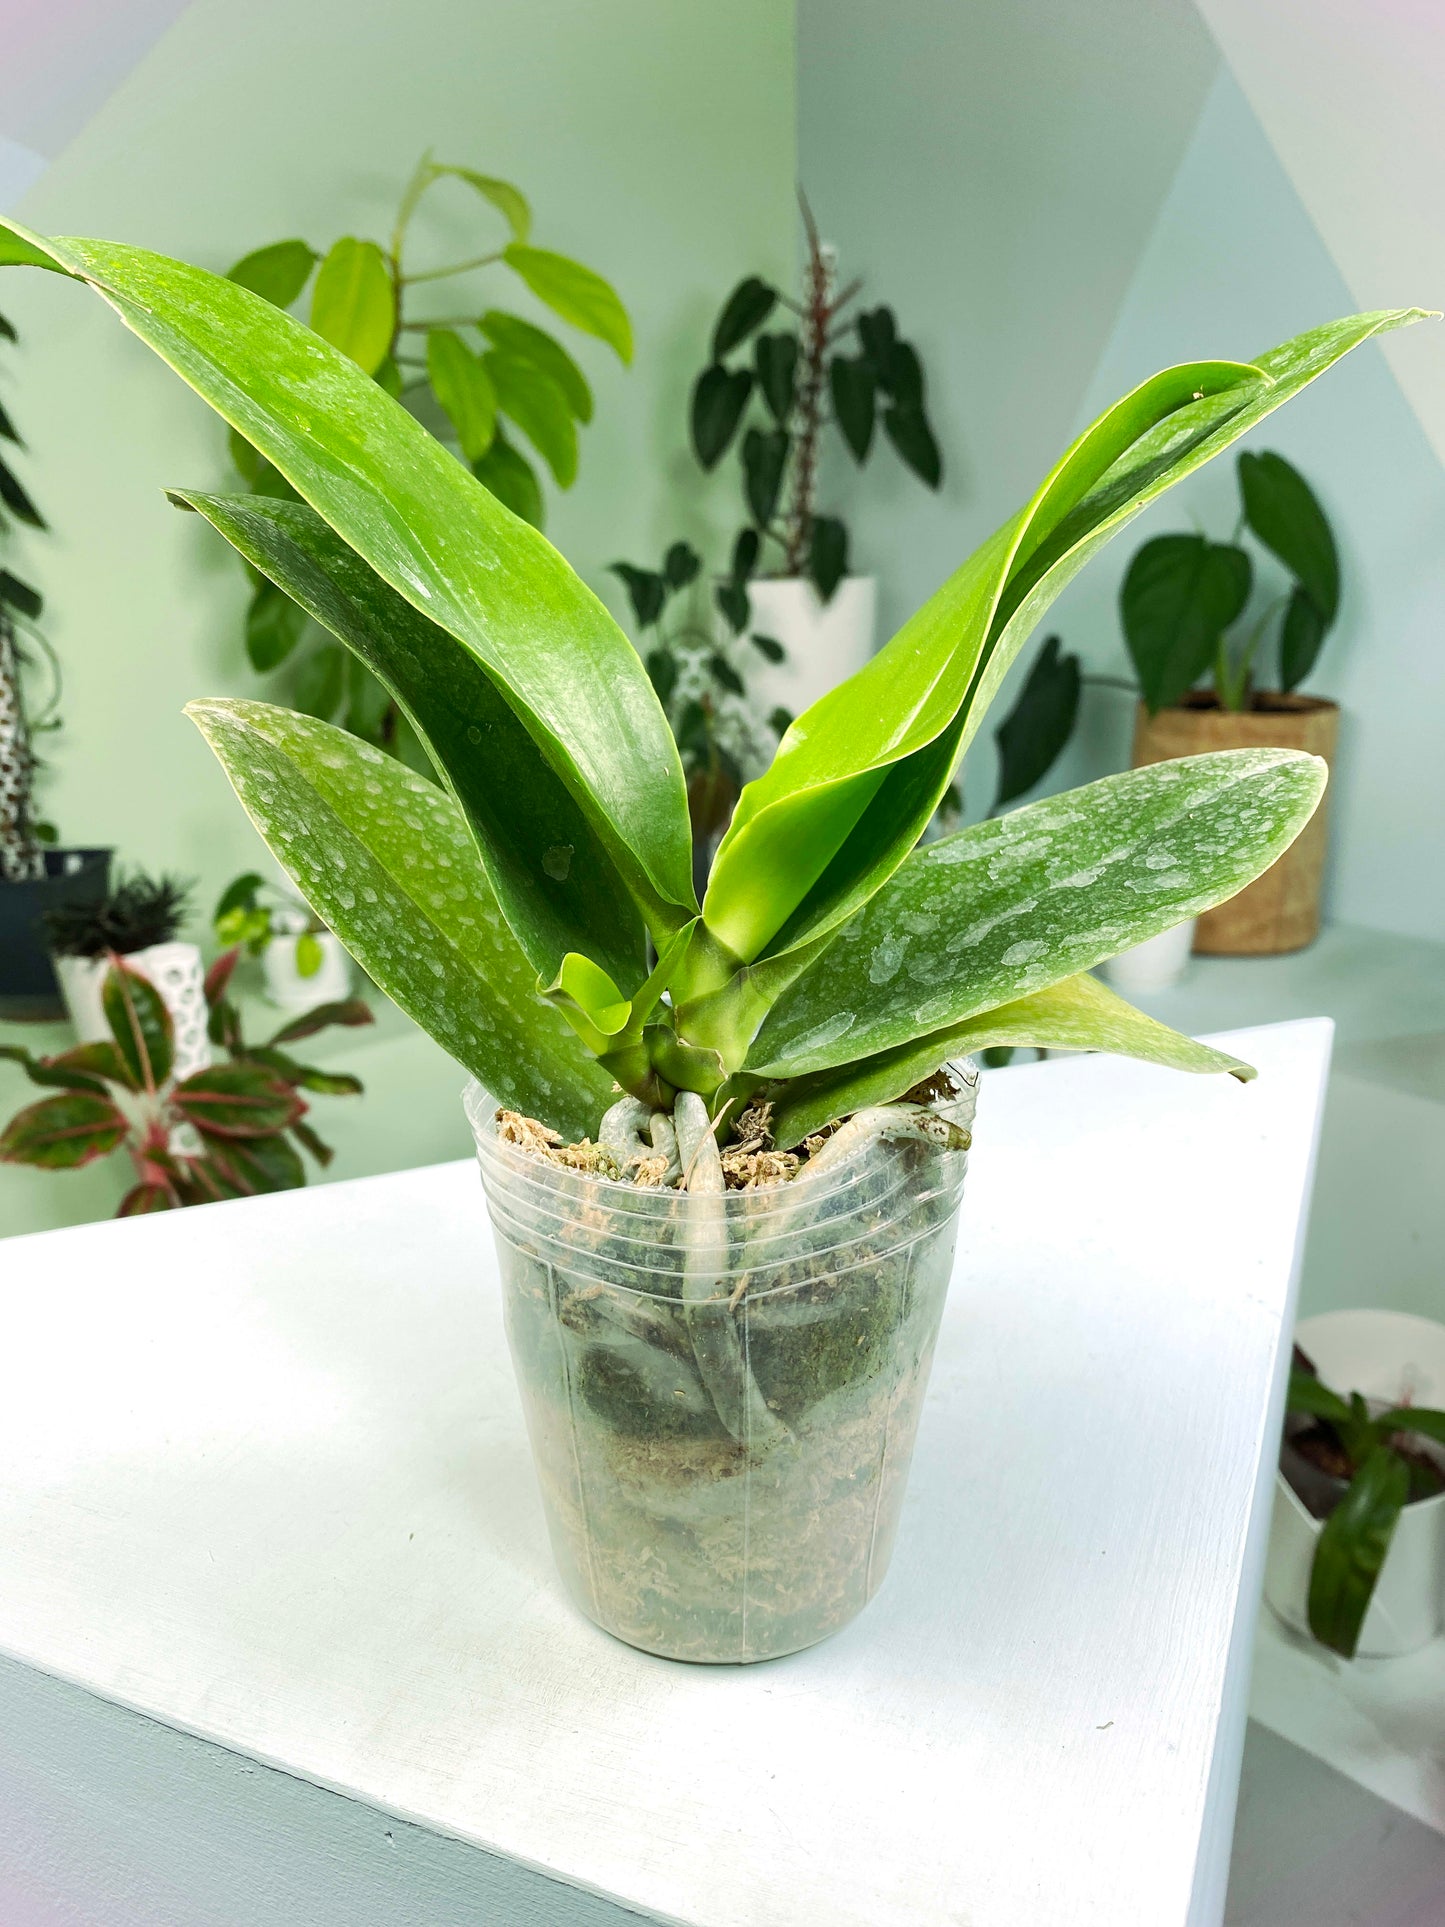 Phalaenopsis Sogo Shito (G:H1) [1536] | Rare Orchid | Exact Plant